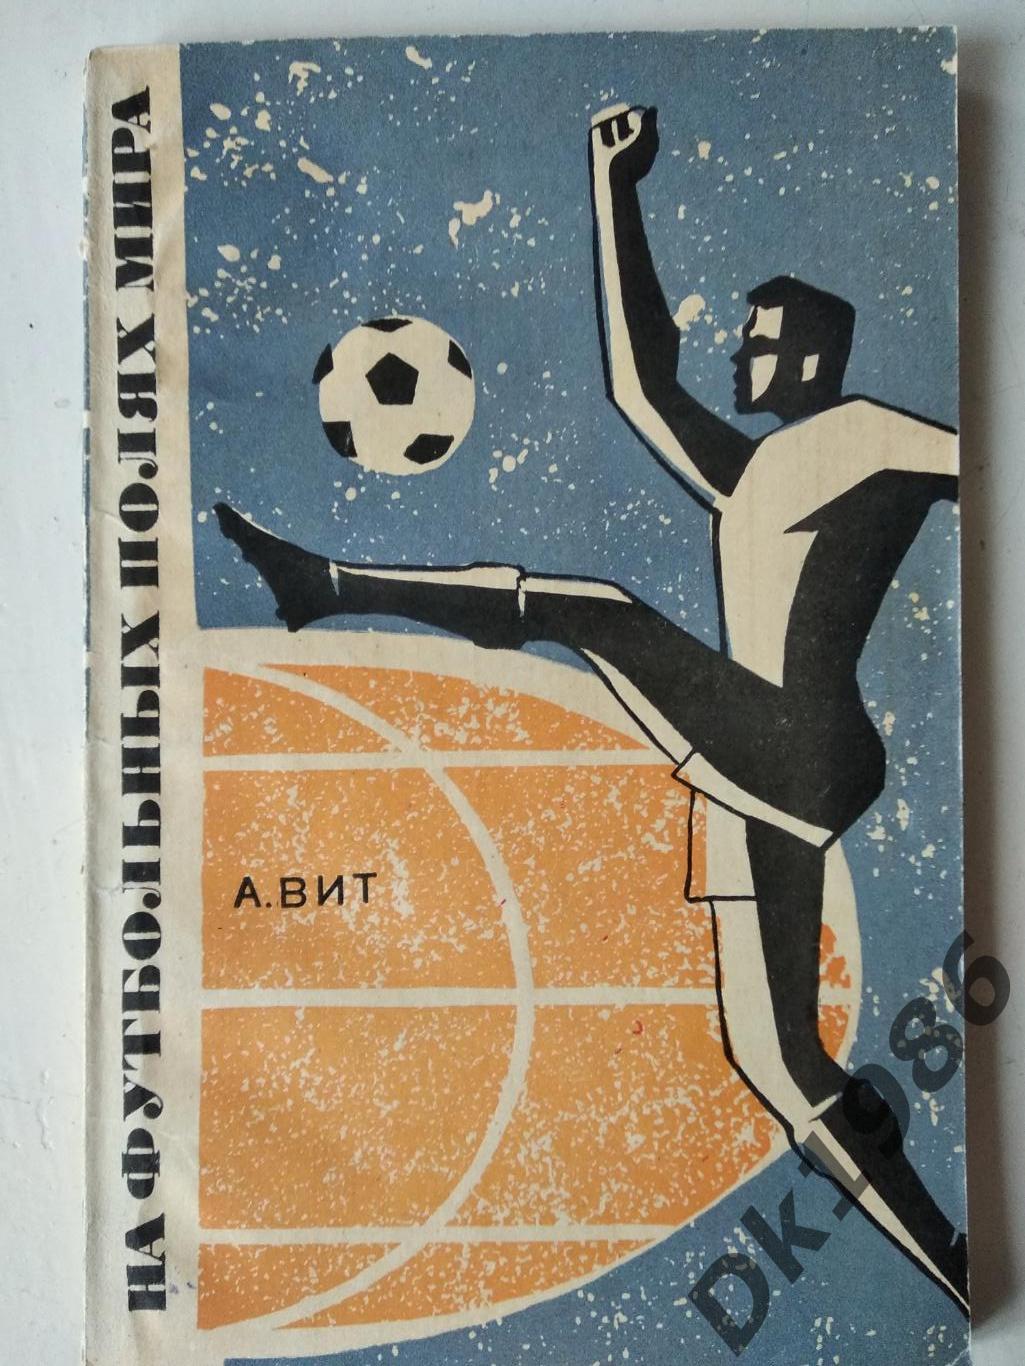 А.Віт На футбольних полях світу, 1967 рік